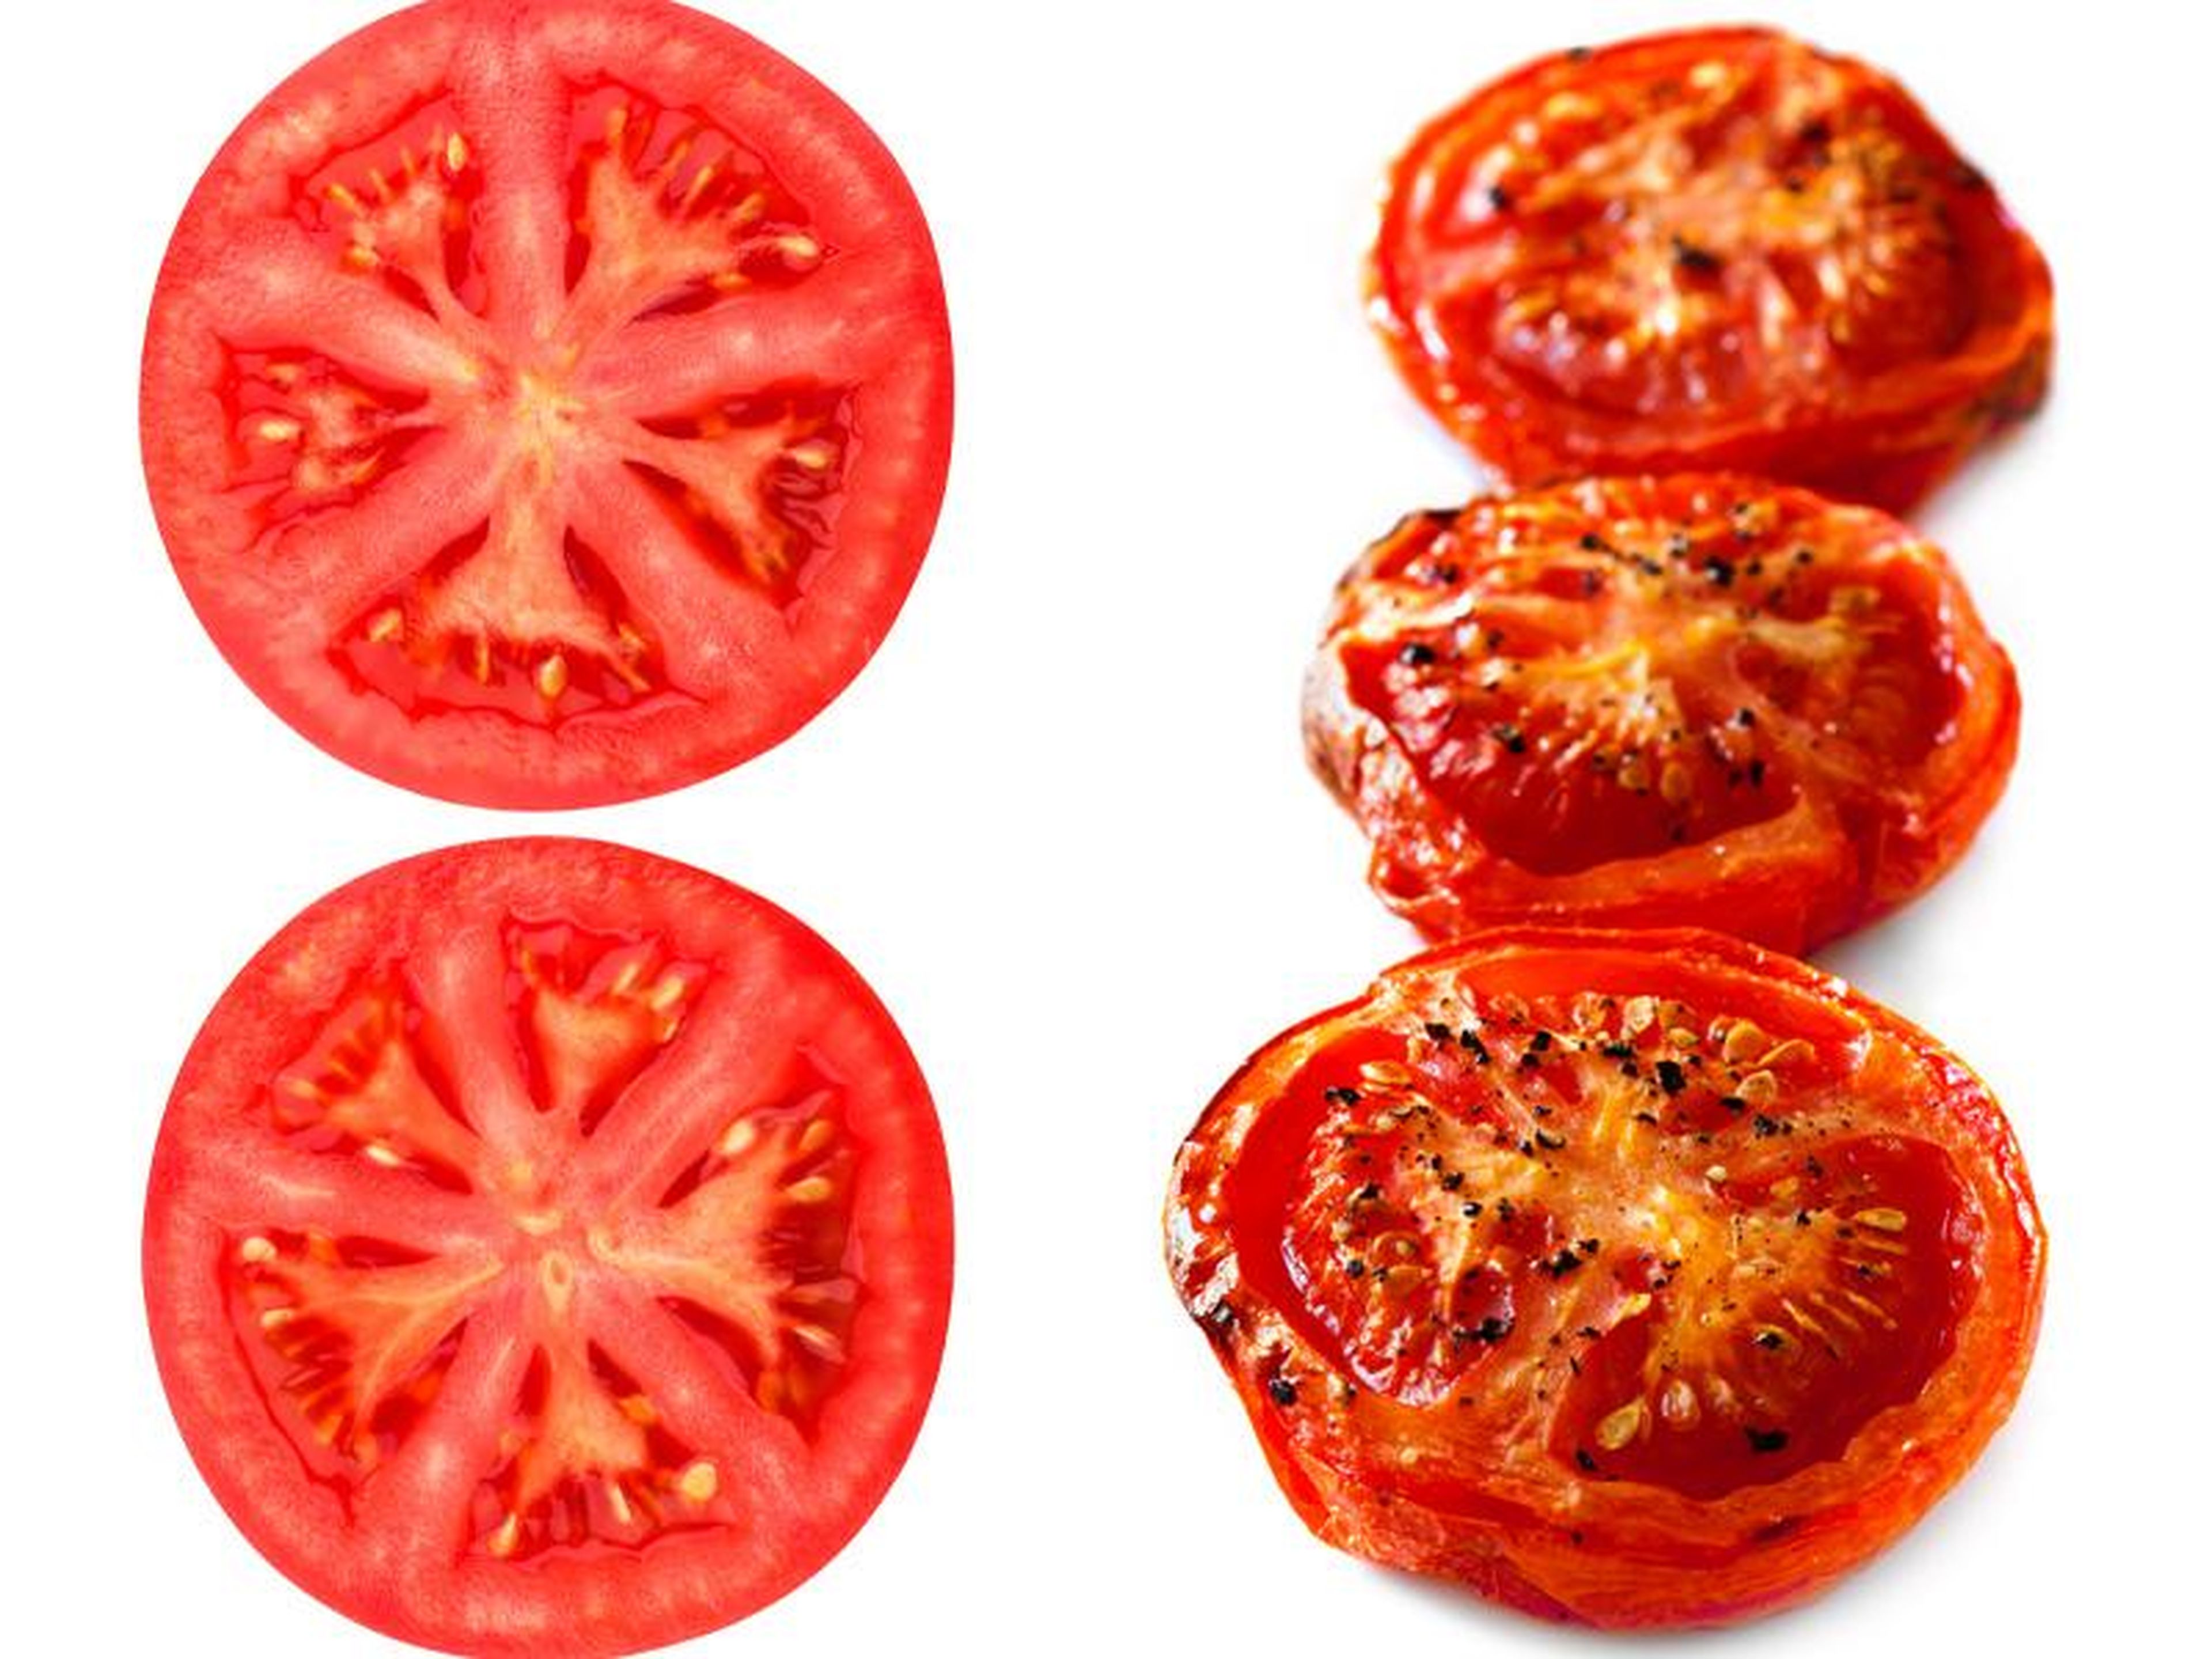 Los tomates crudos no son perjudiciales,pero algunos beneficios adicionales se añaden con los tomates cocidos.